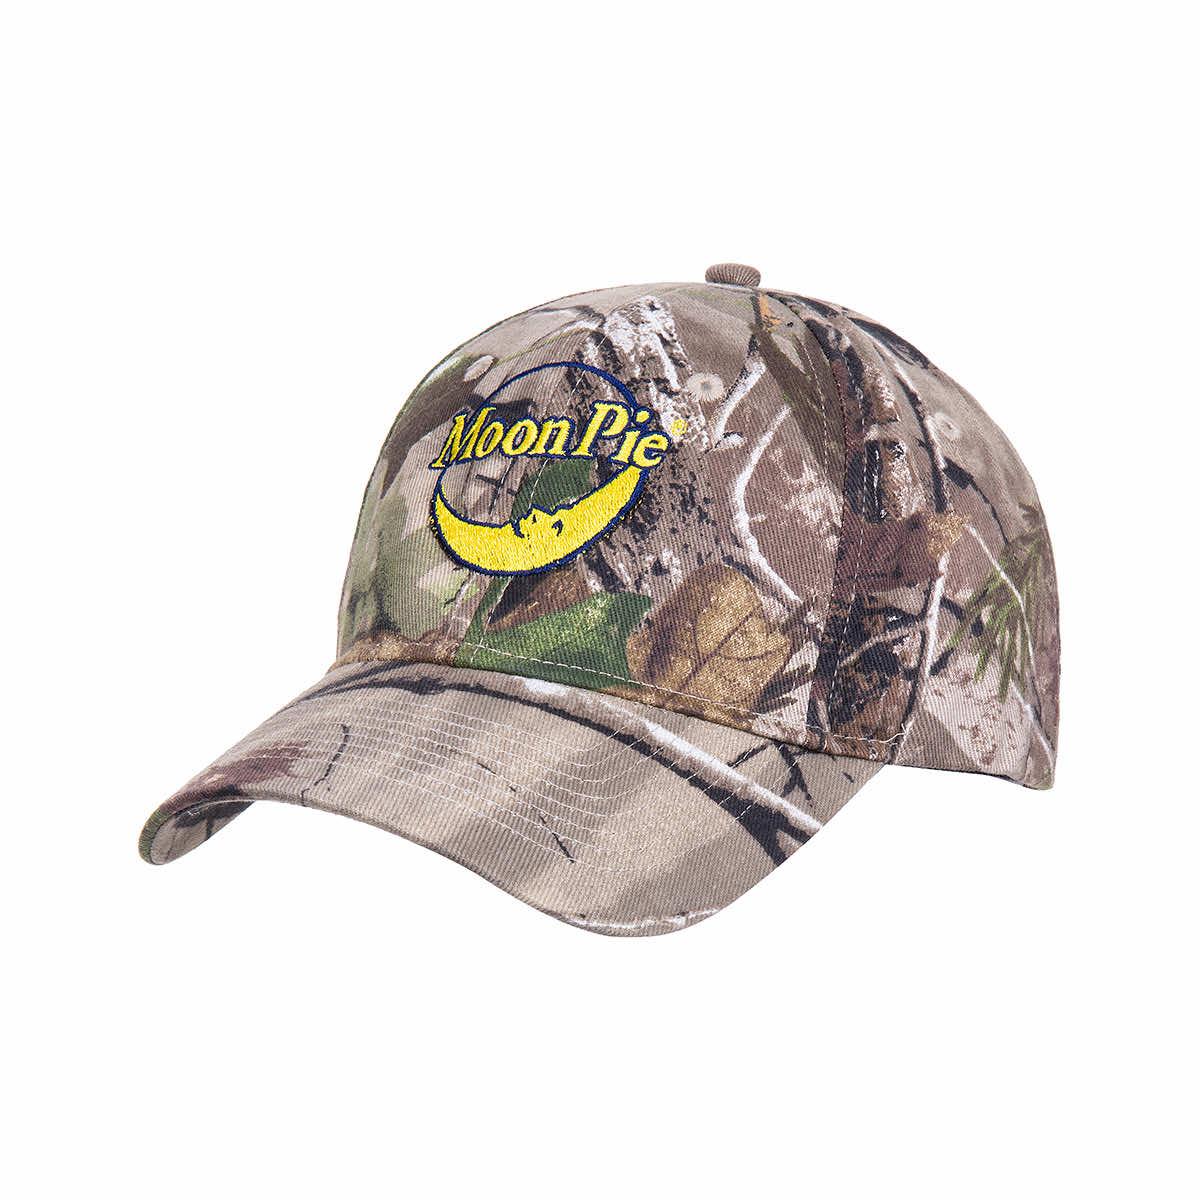 Shop Realtree Men's Original Camo Logo Hat at